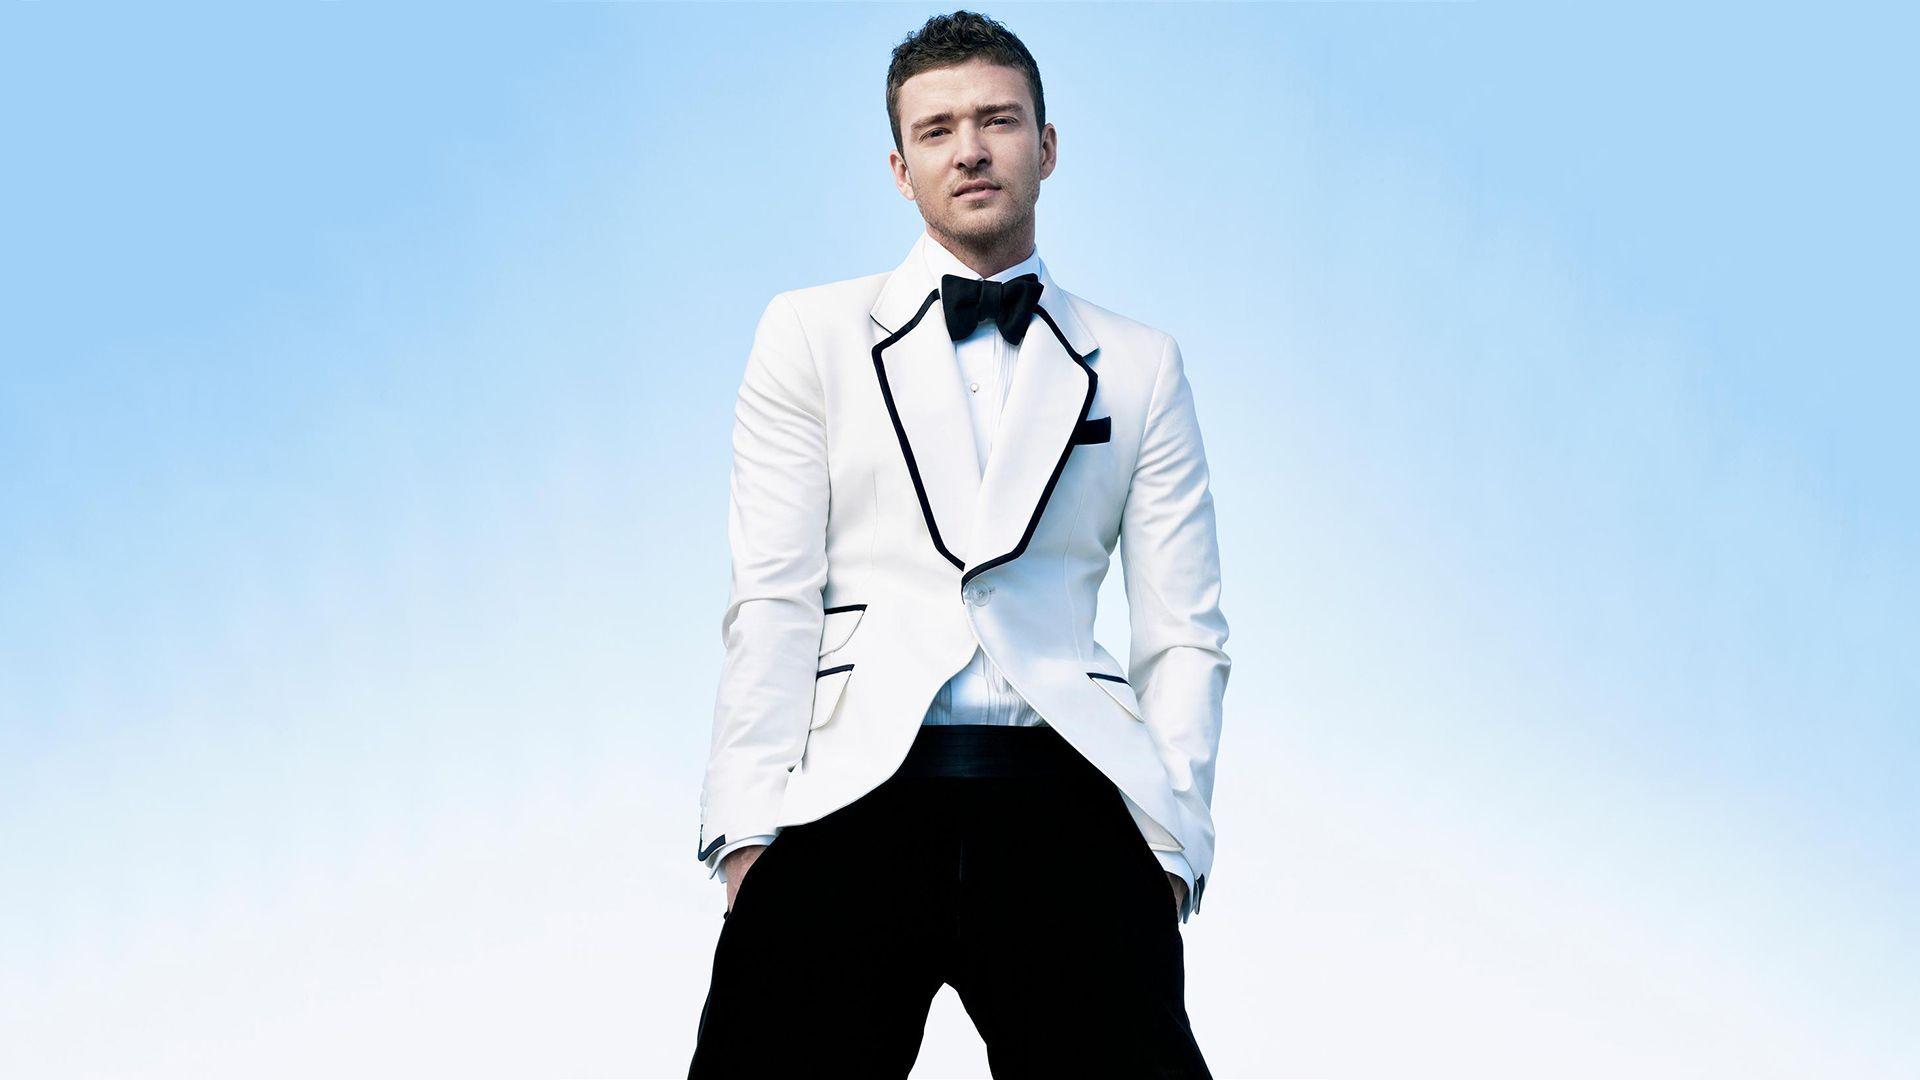 Justin Timberlake Background Wallpaper